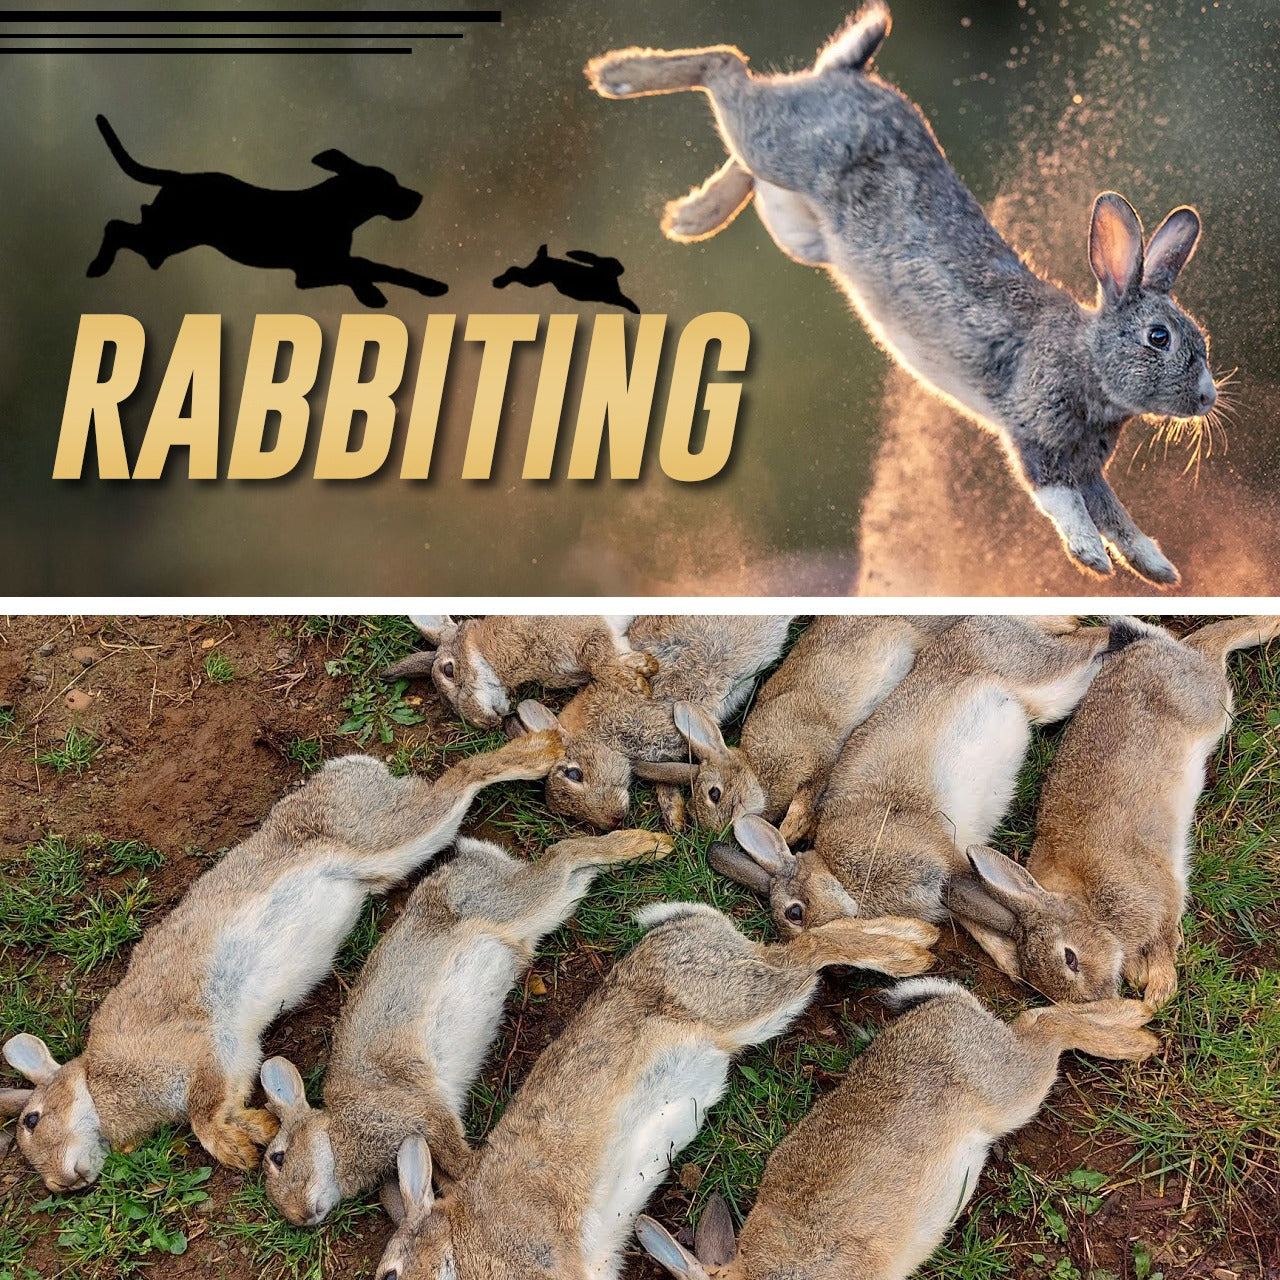 Rabbiting